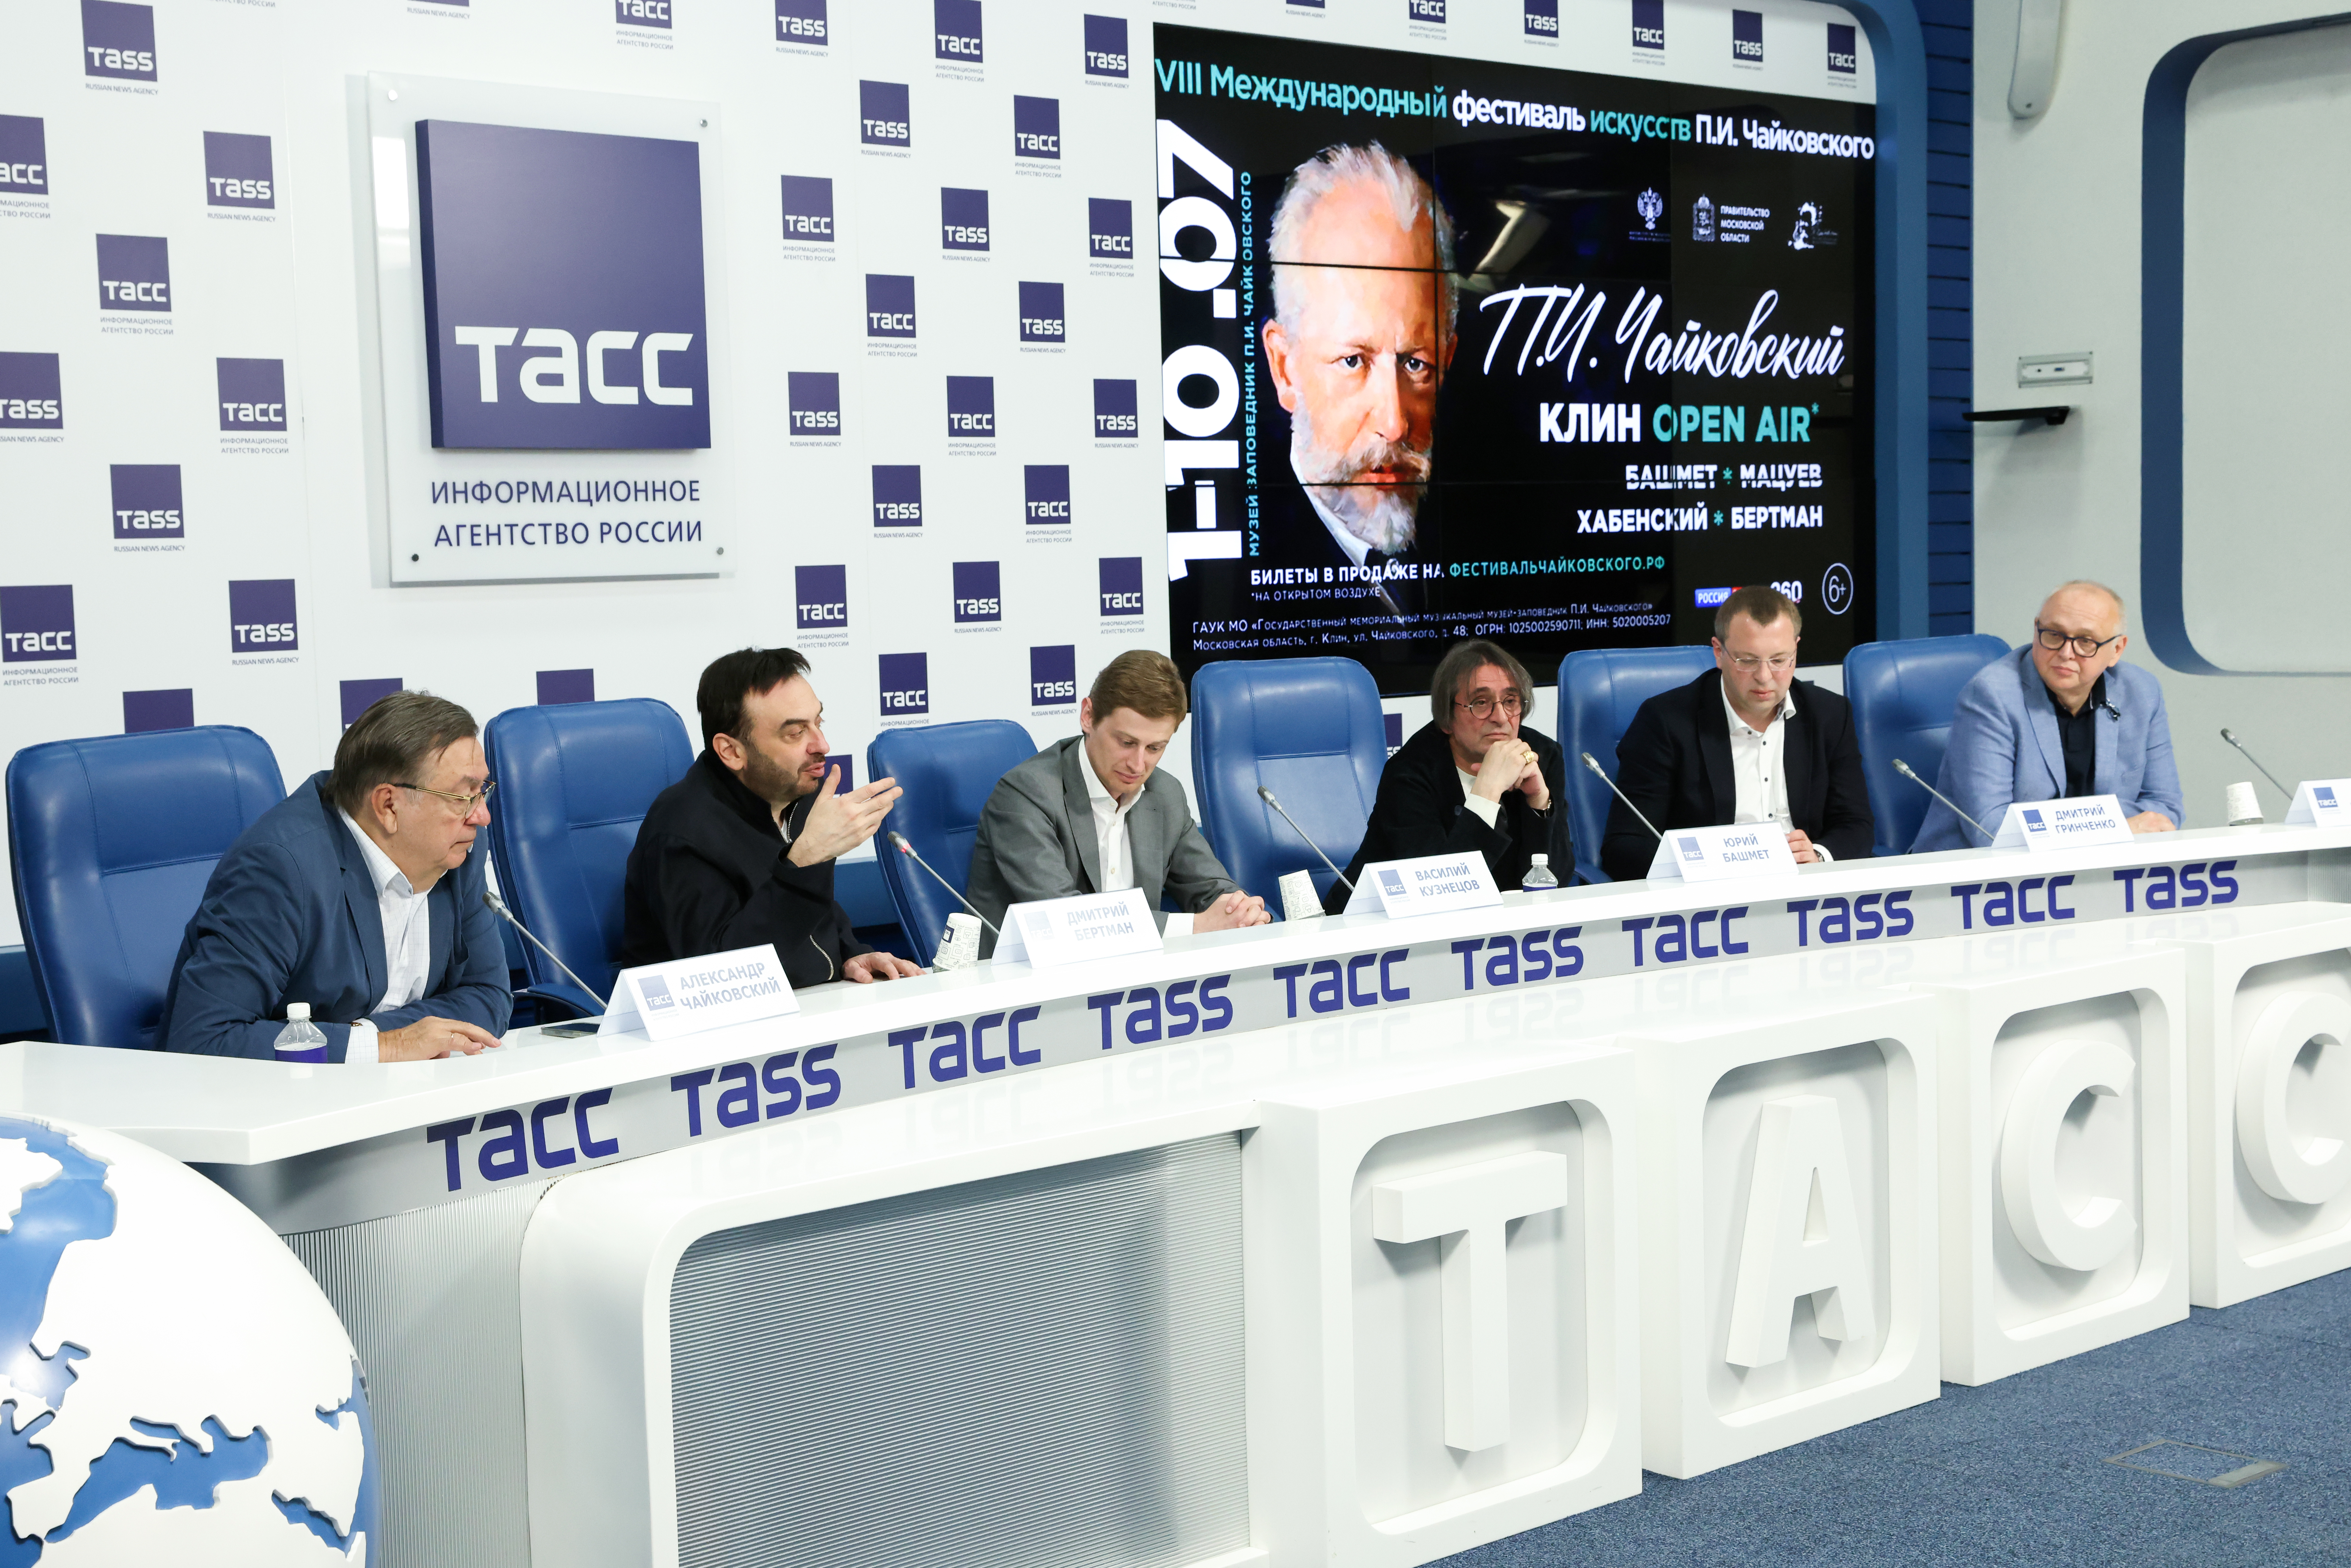 Пресс-конференция, посвященная открытию VIII фестиваля искусств П.И. Чайковского, прошла в ТАСС